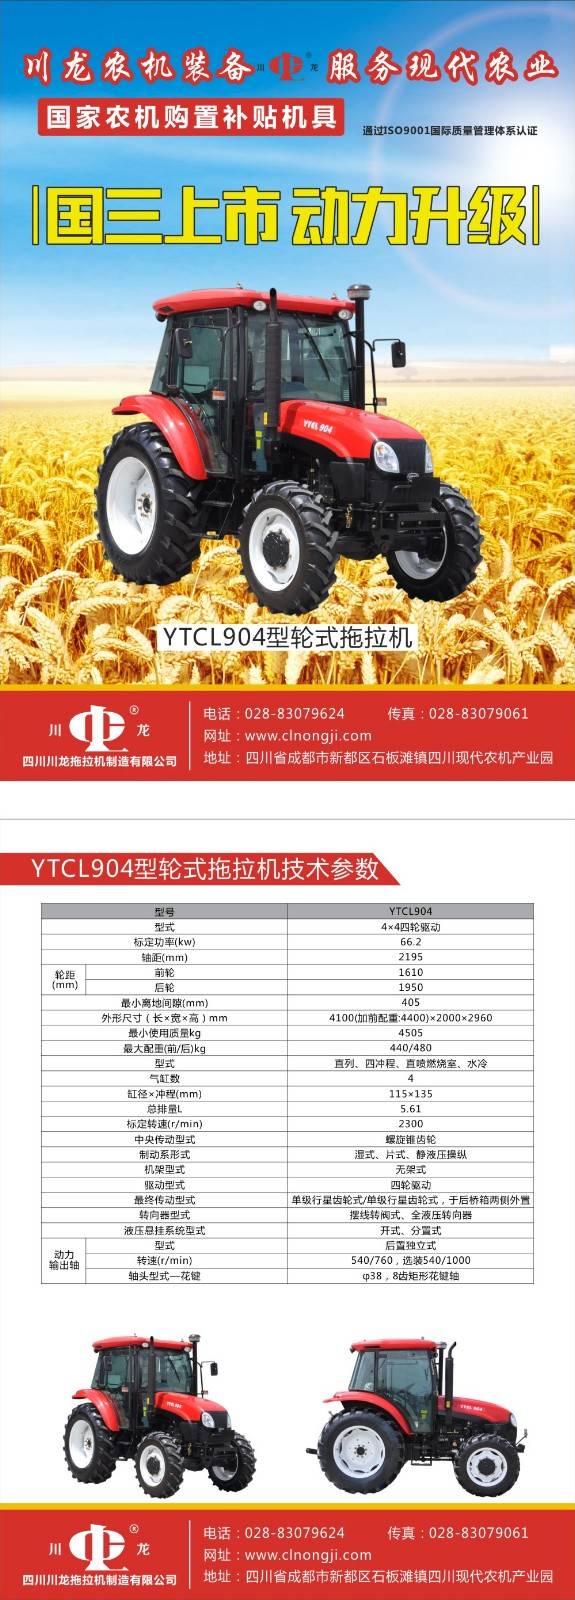 川龙ytcl904轮式拖拉机